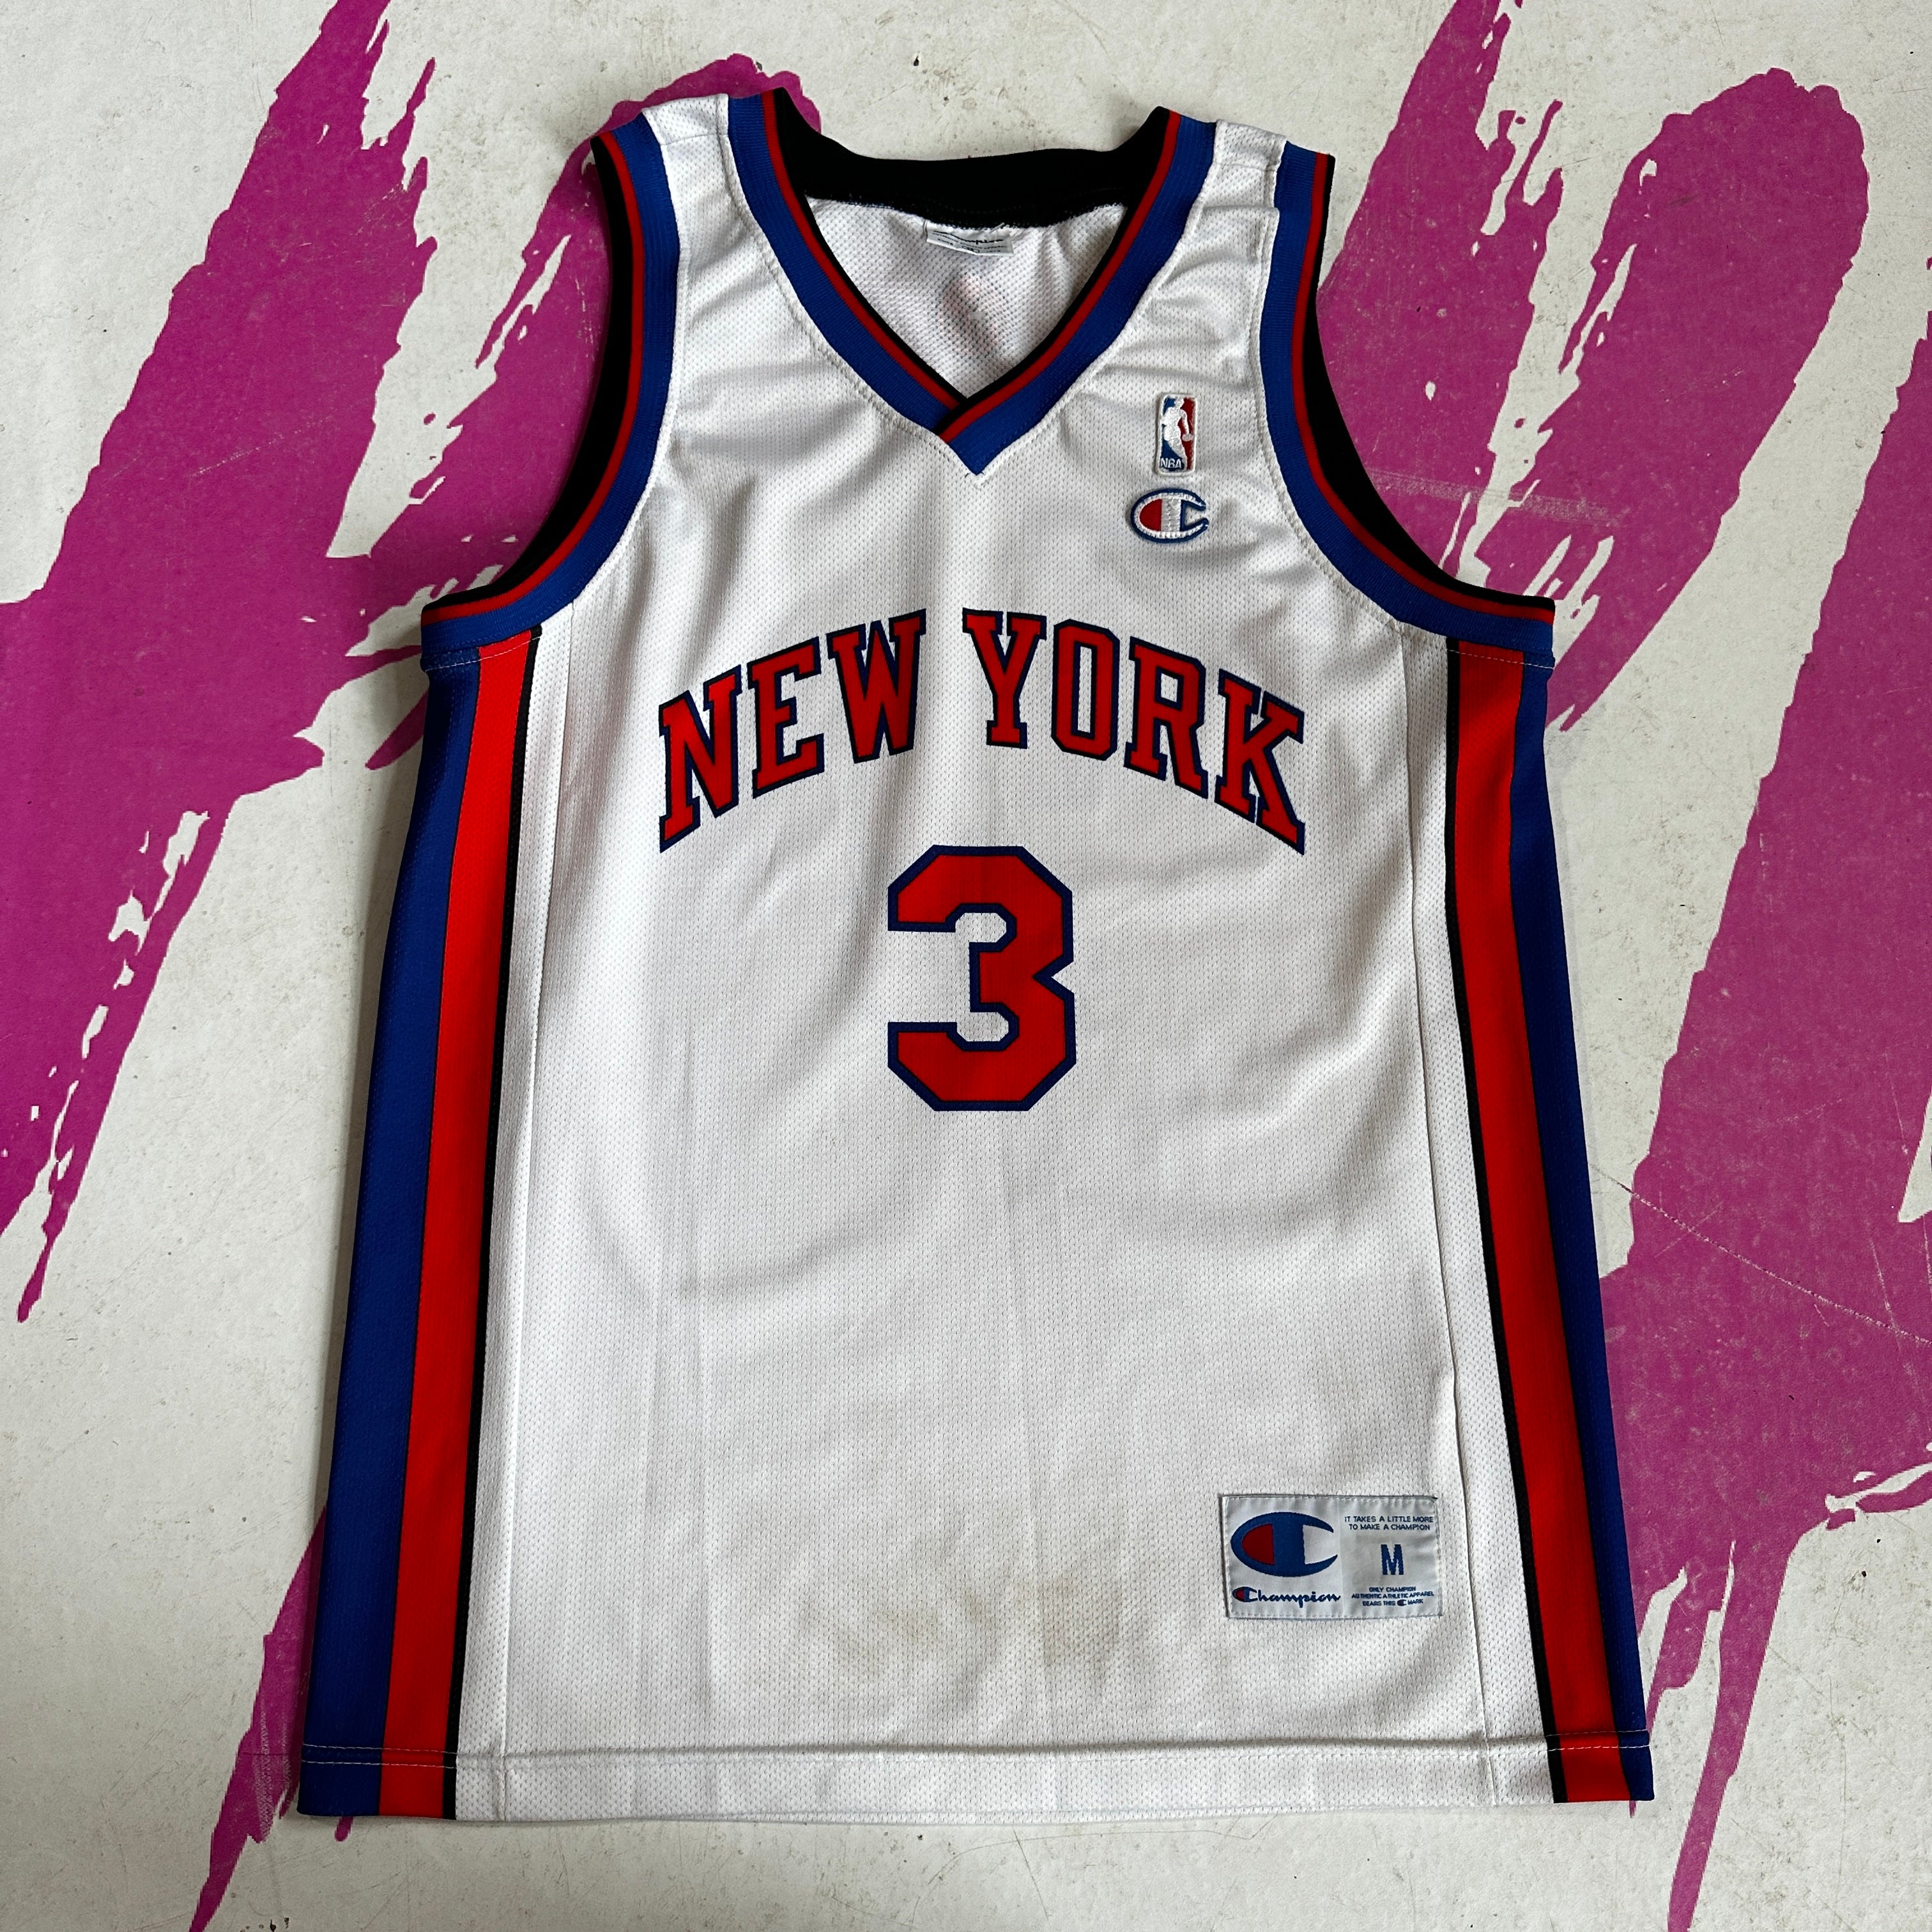 Vintage Larry Johnson 2 NY Knicks Basketball Jersey by Champion